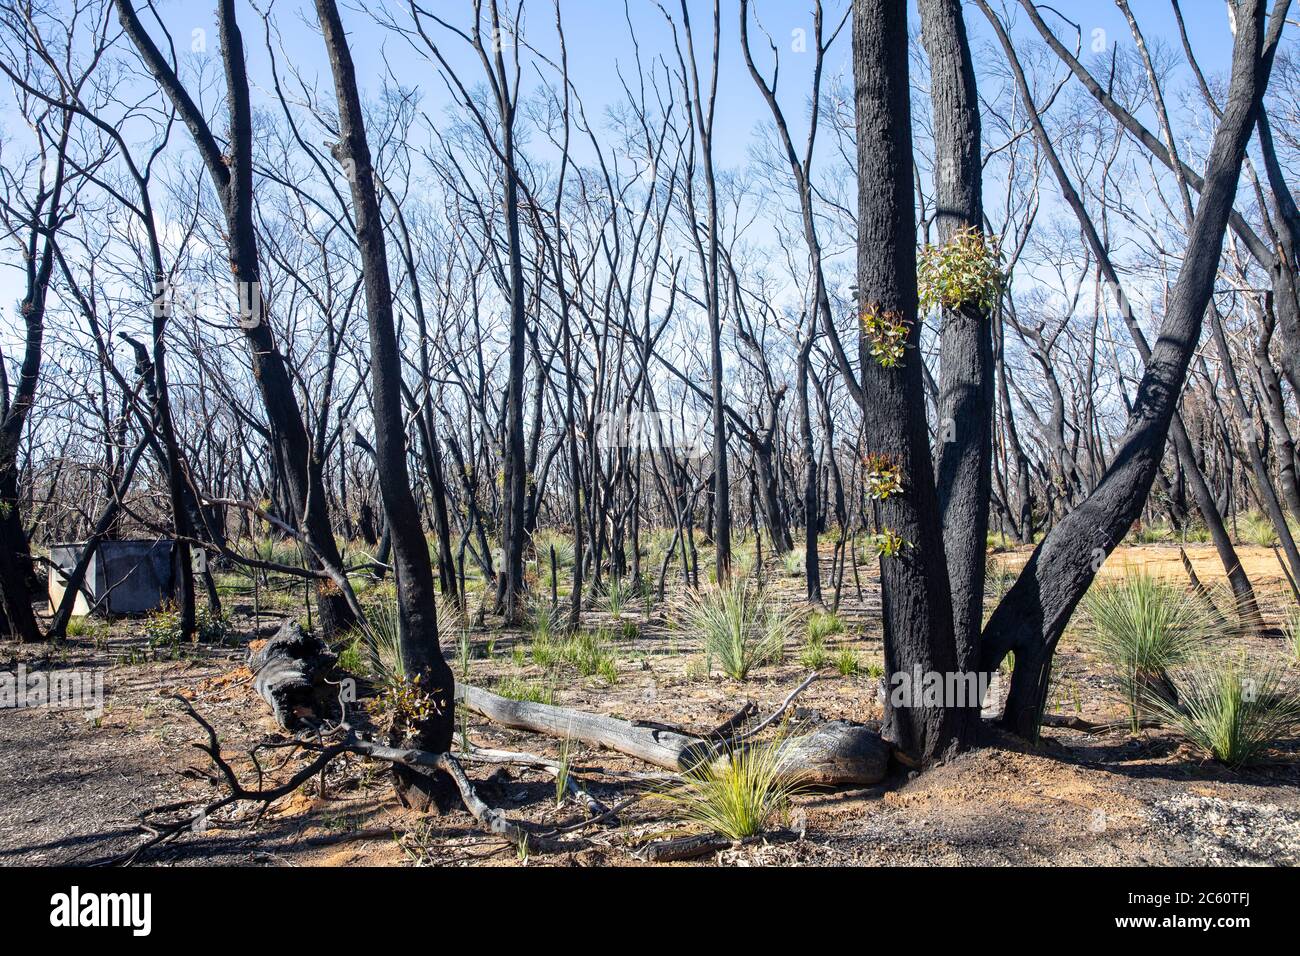 2020 fuochi d'arresto australiani hanno danneggiato grandi parti del parco nazionale delle montagne blu nel NSW, germogli verdi di recupero nella vita delle piante 2020 luglio, Australia Foto Stock